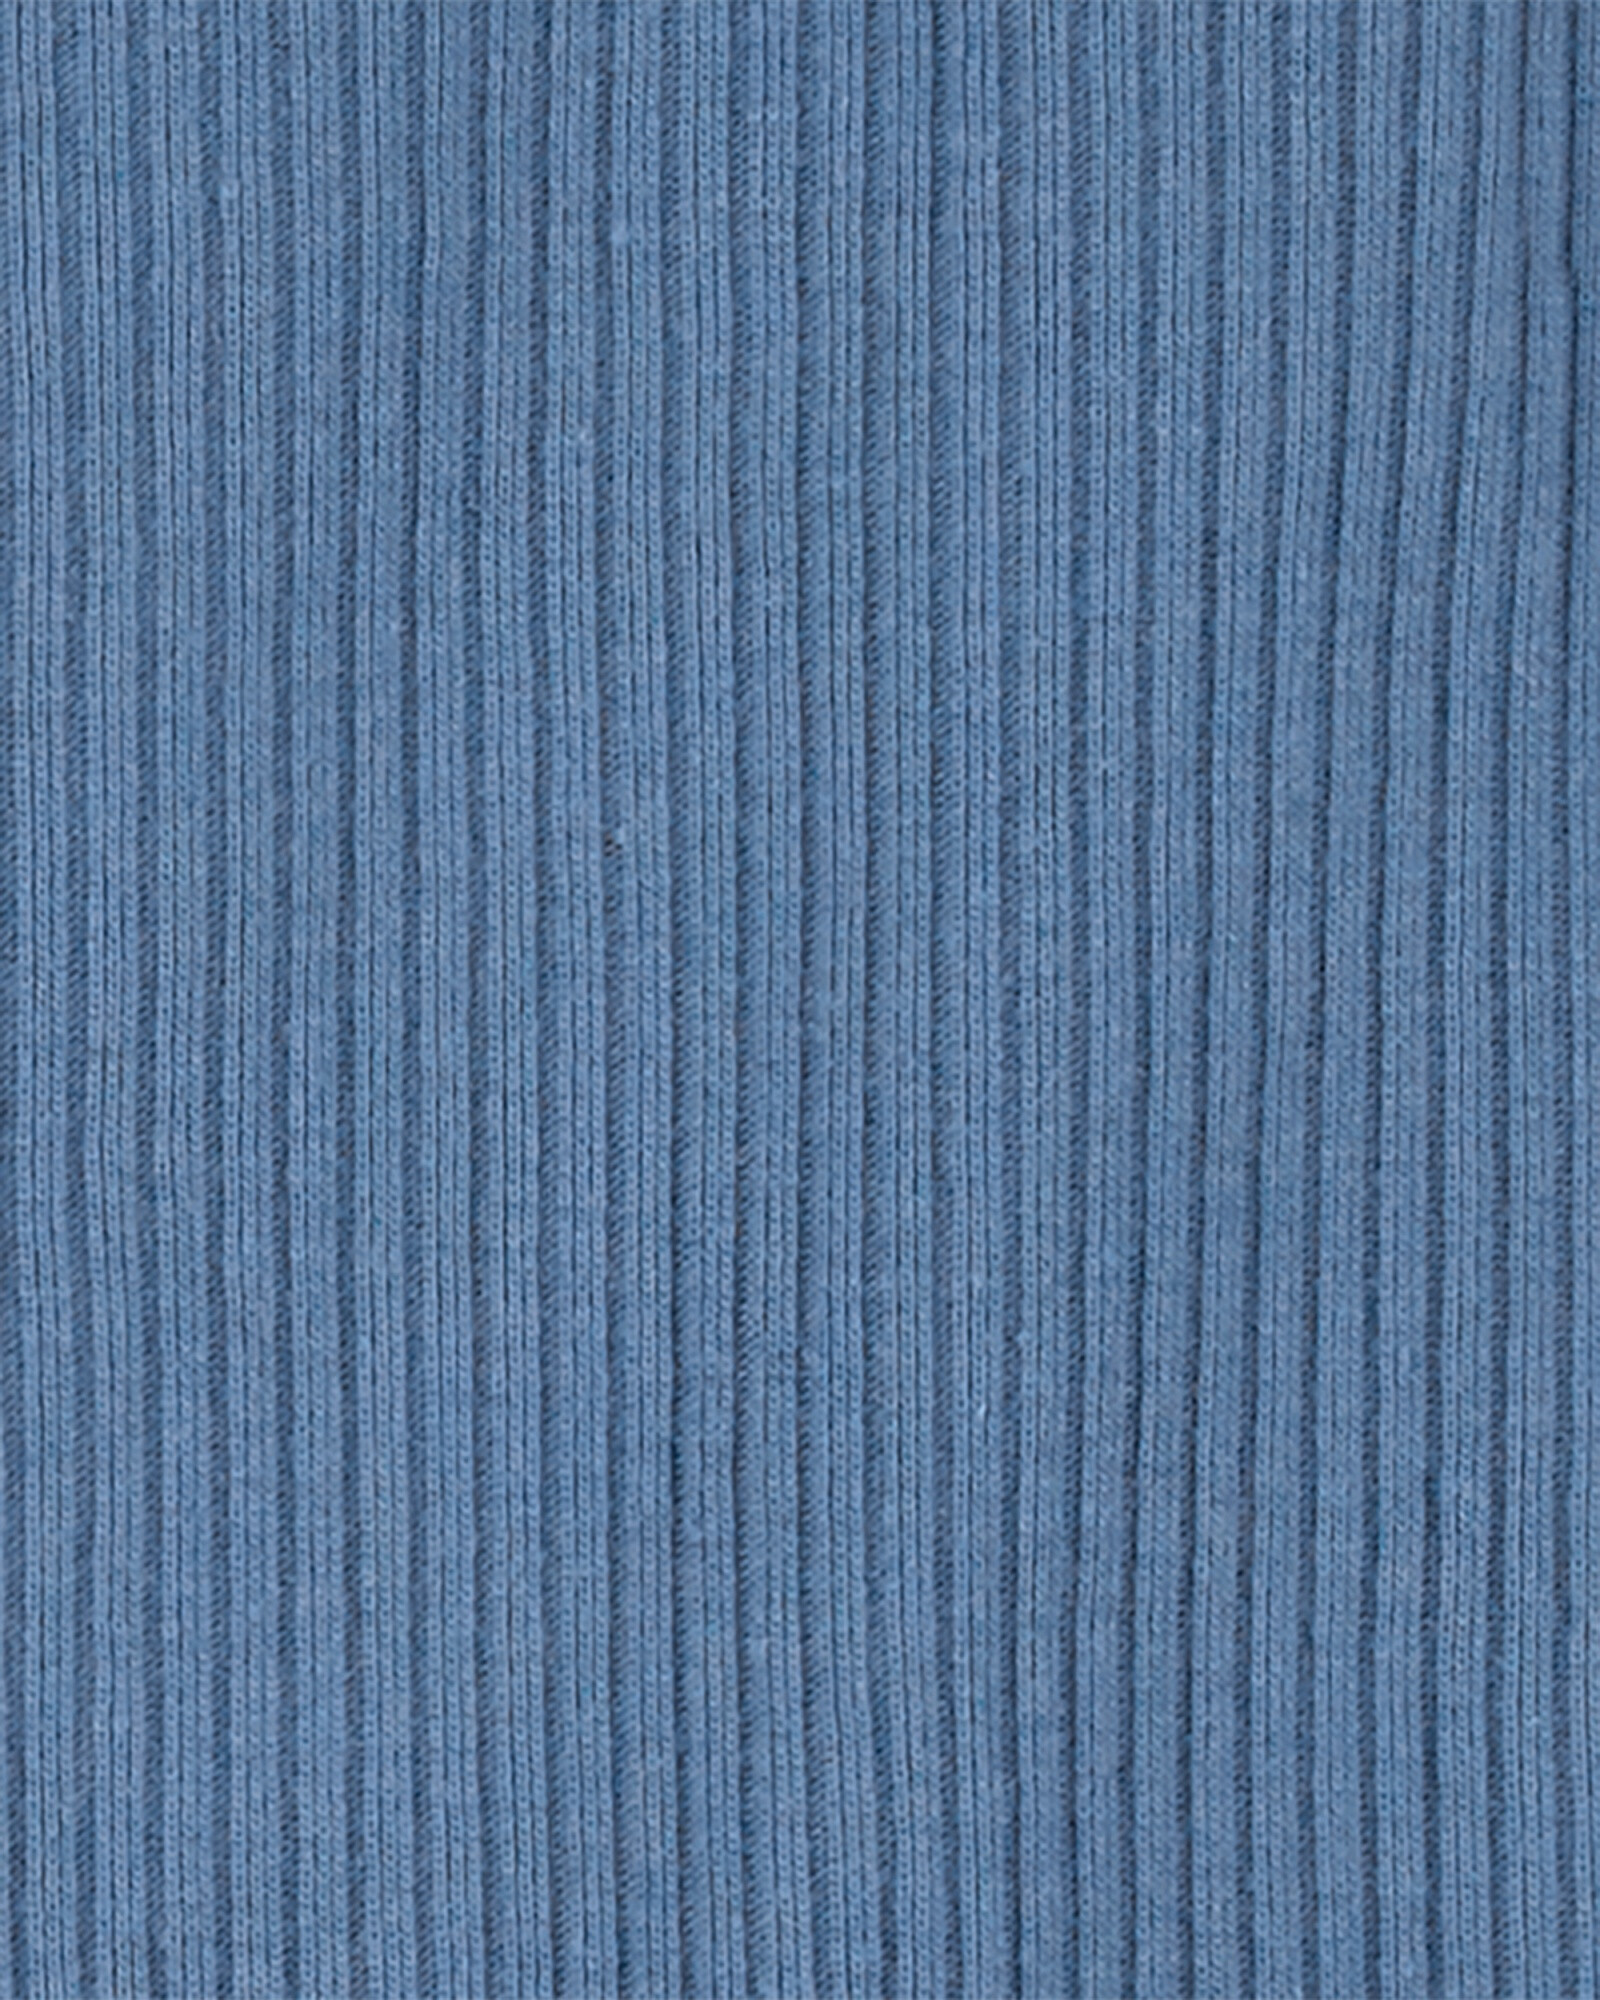 Monito y medias de algodón, azul Sin color